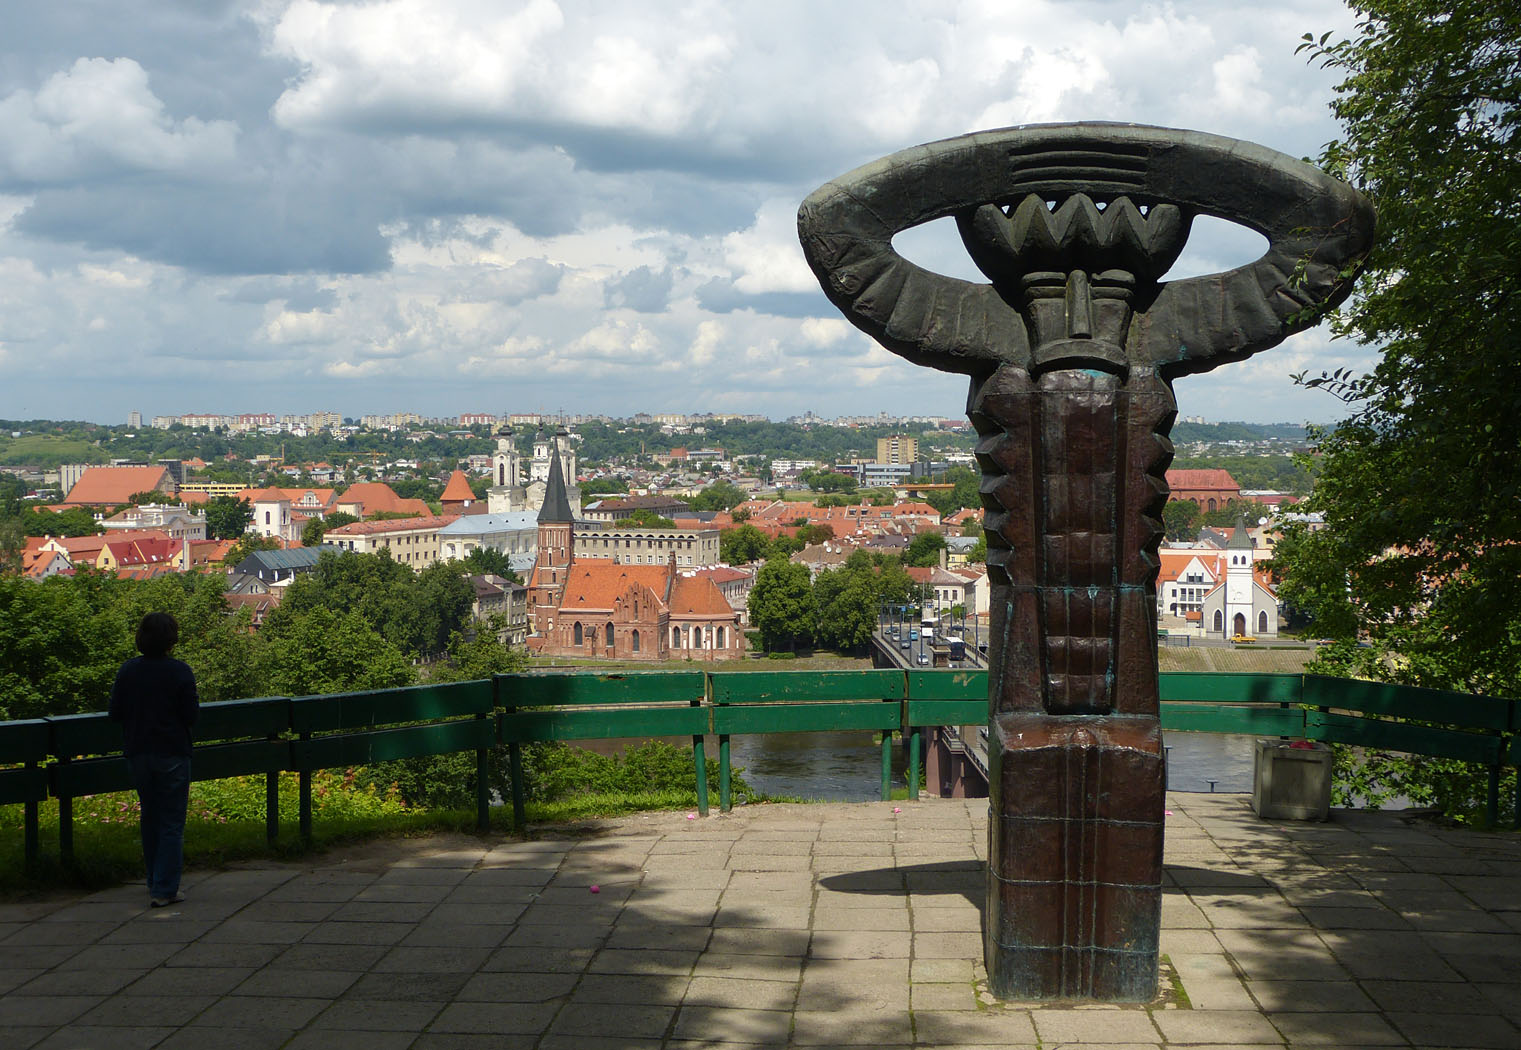 City skyline and Perkunas carving, Kaunas, Lithuania